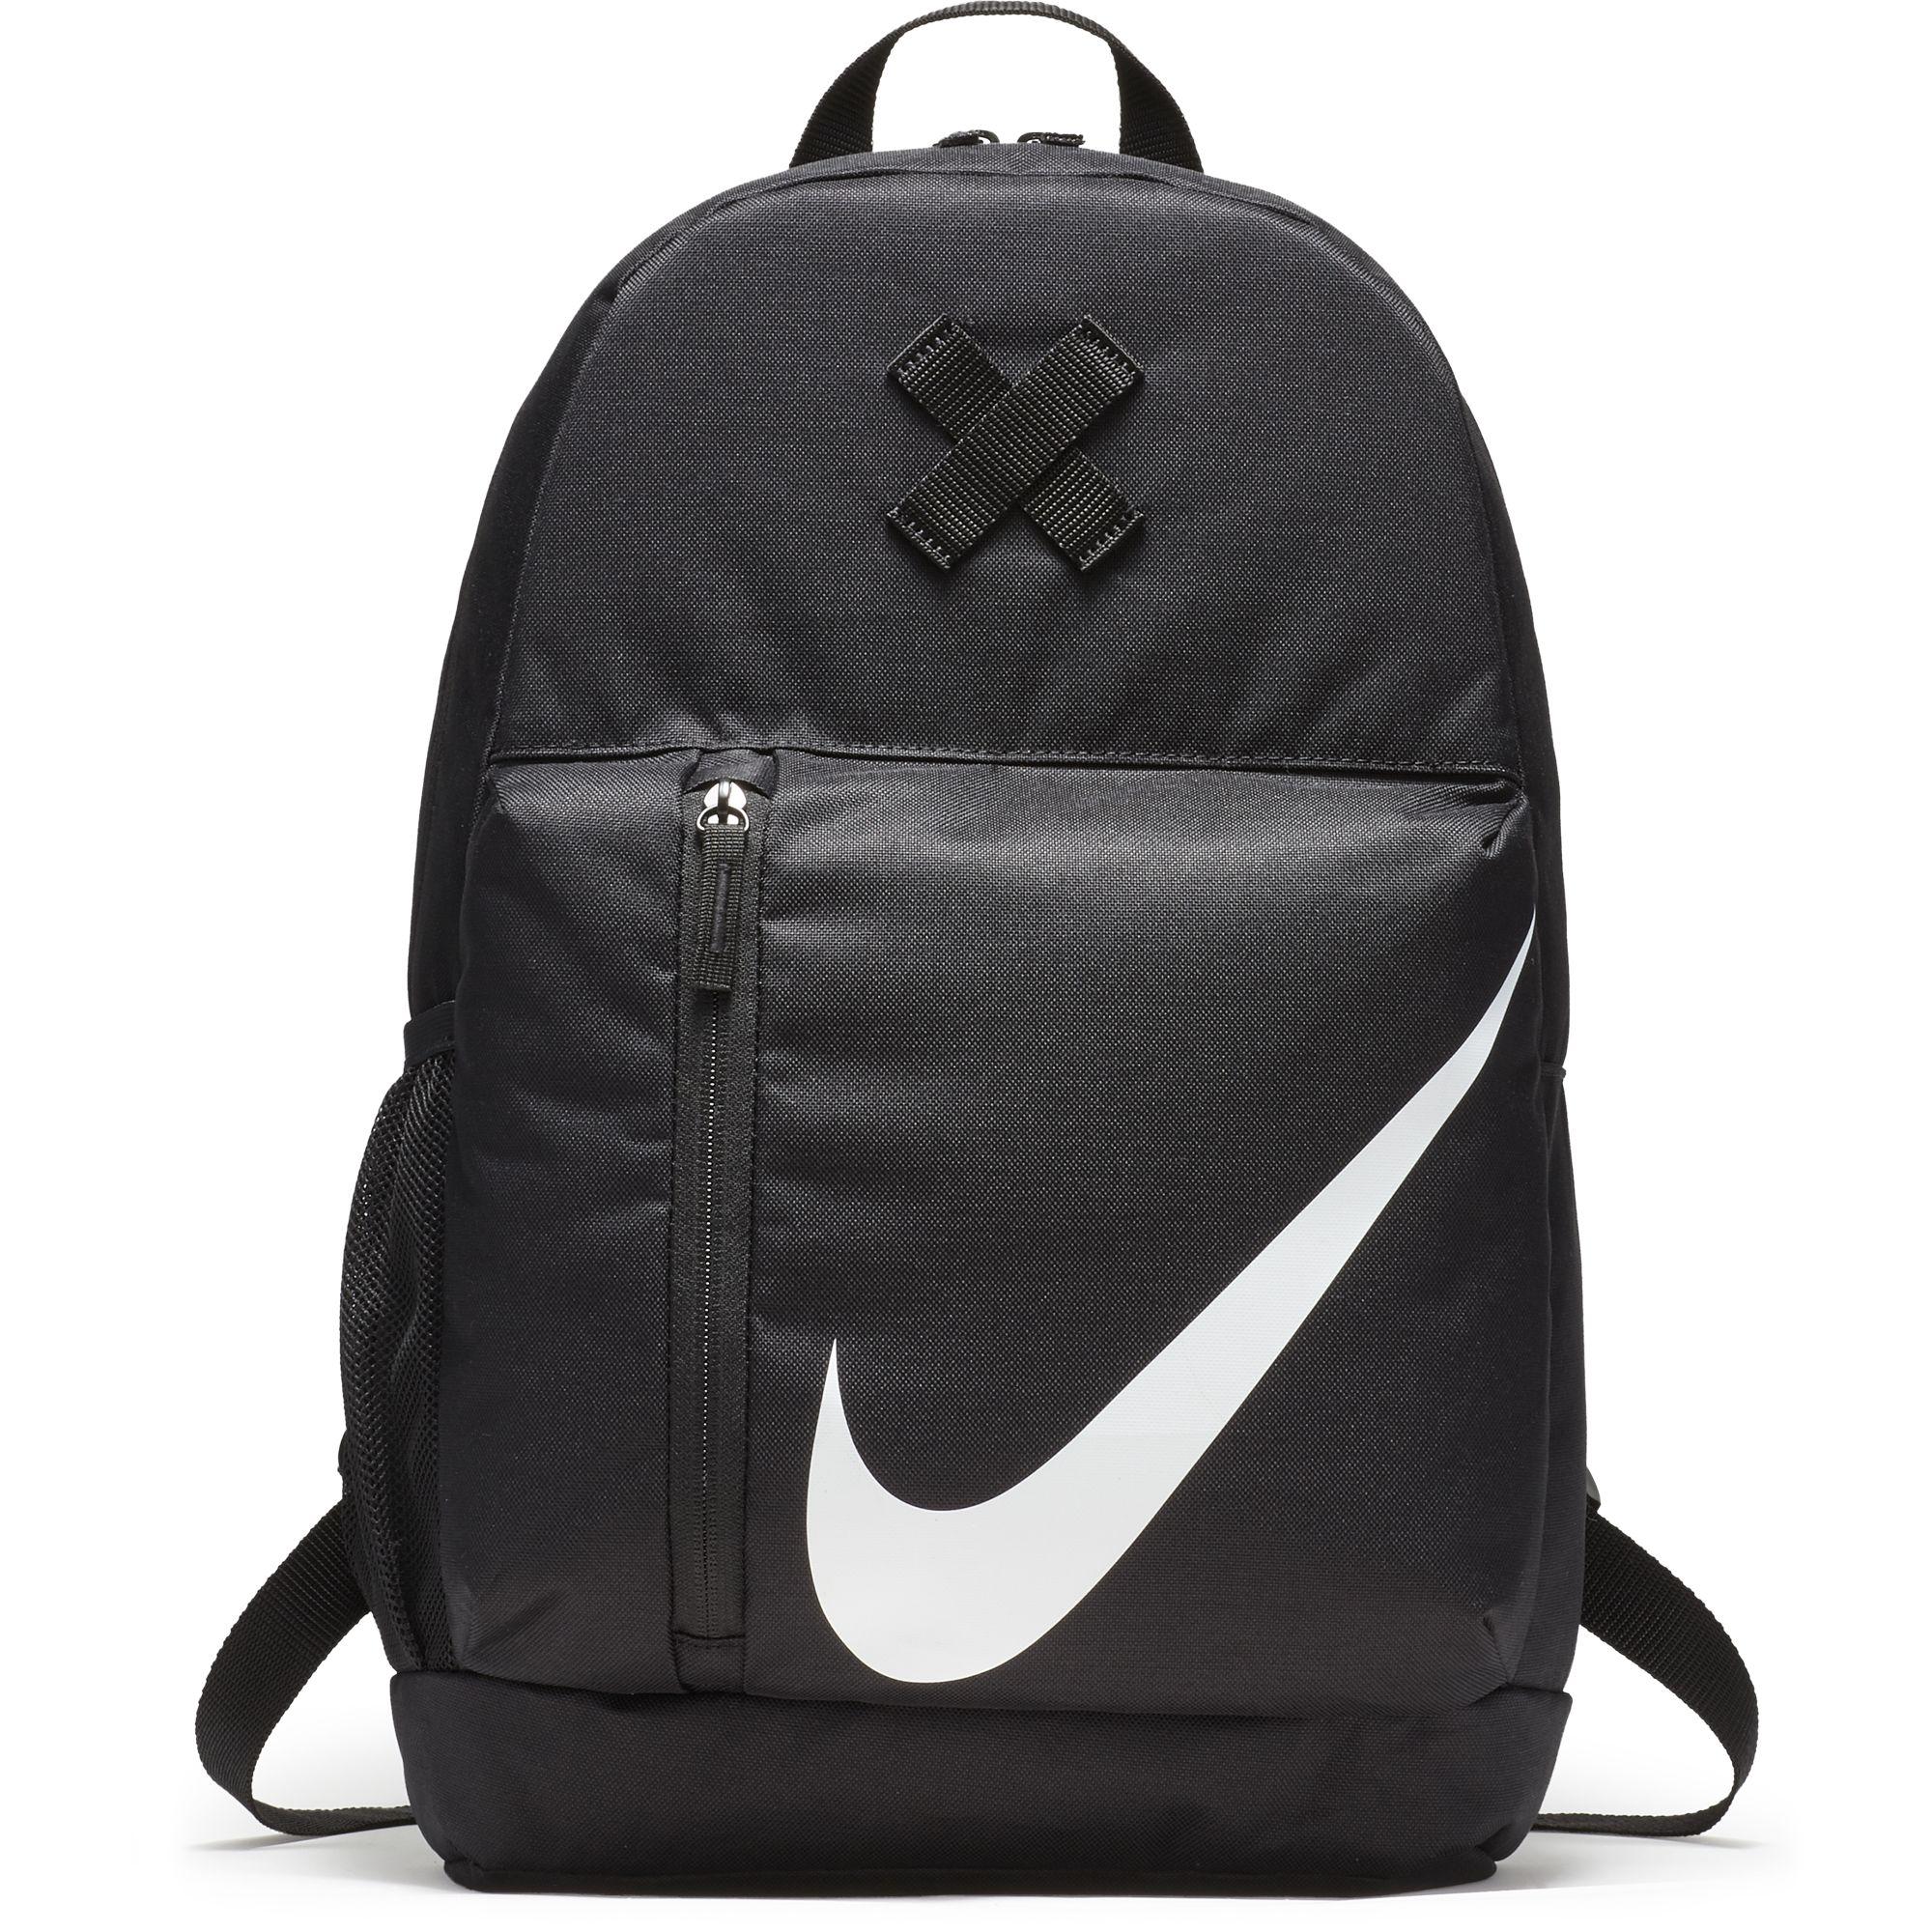 Nike Kids Elemental Backpack - Black/White - Tennisnuts.com